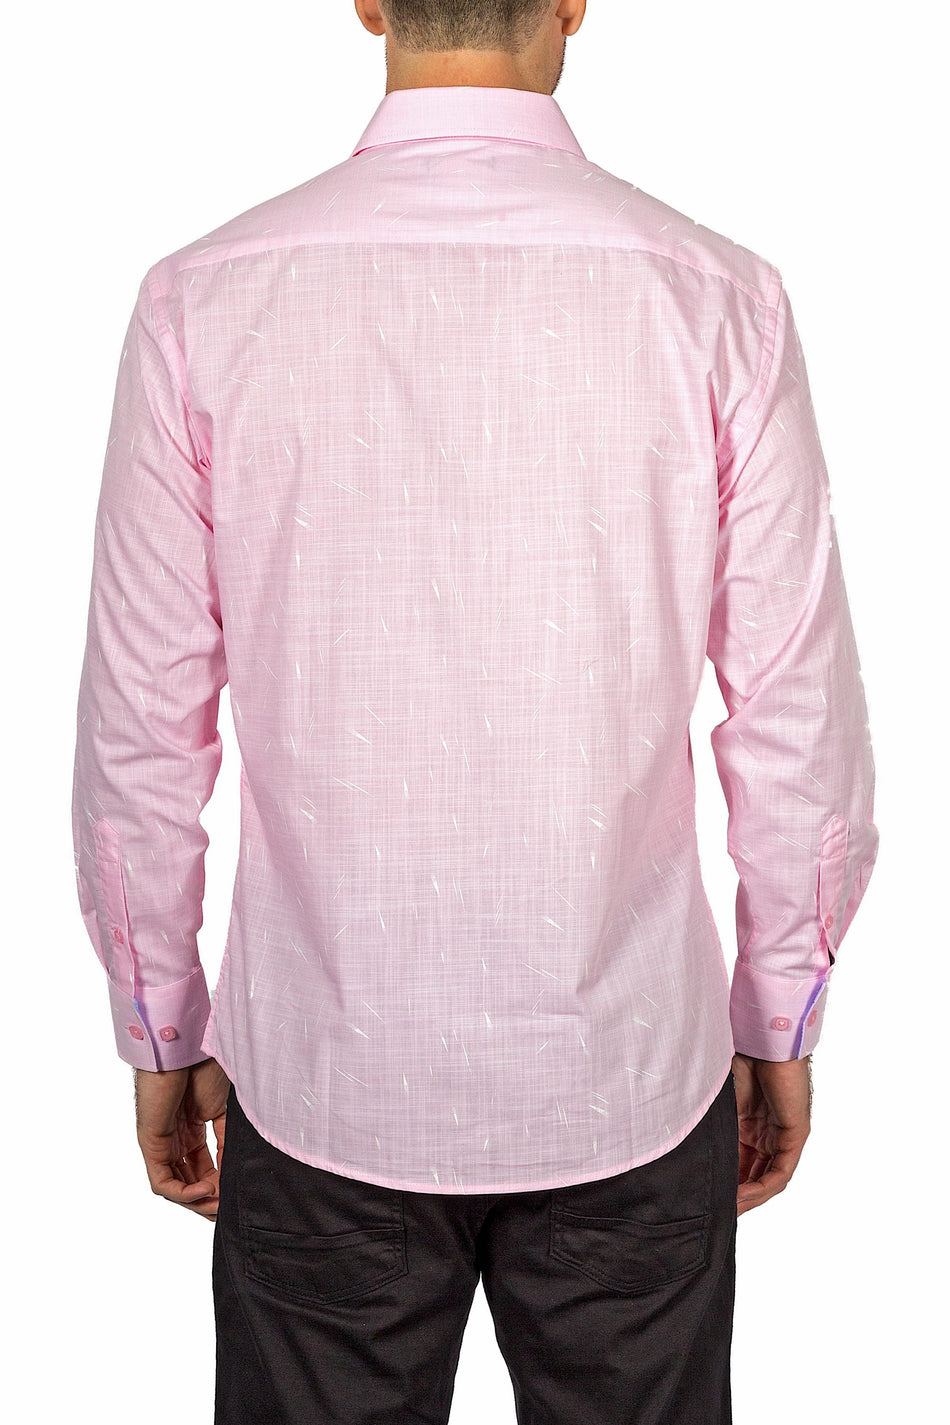 BESPOKE - Mens Pink Button Up Long Sleeve Dress Shirt - Modern Fit - 172611 - www.bespokemoda.com